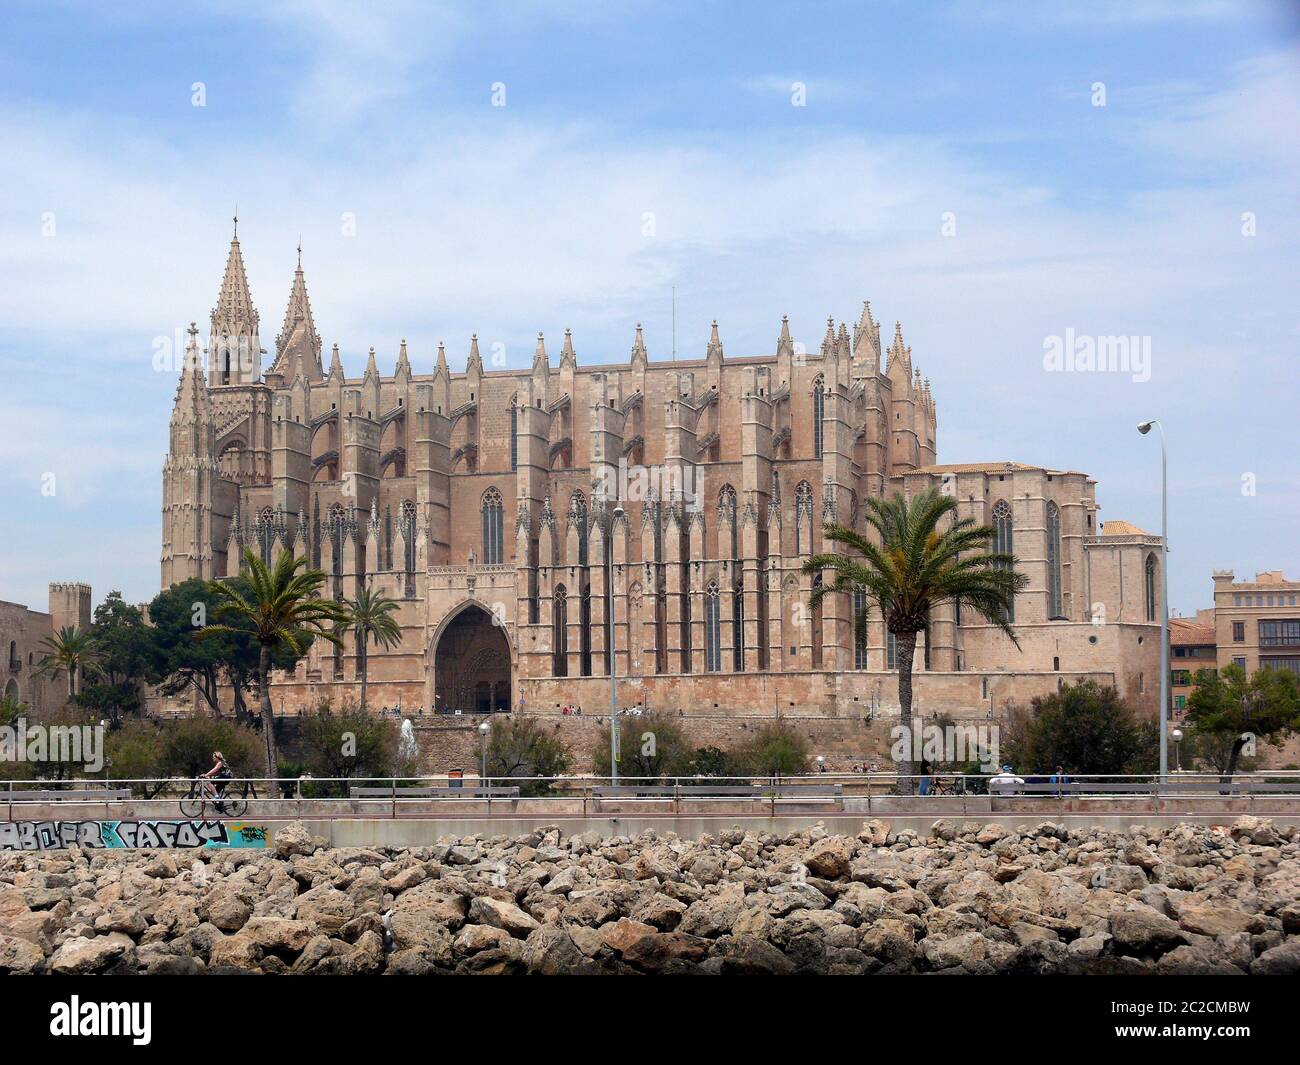 Cathedral of Palma de Mallorca Stock Photo